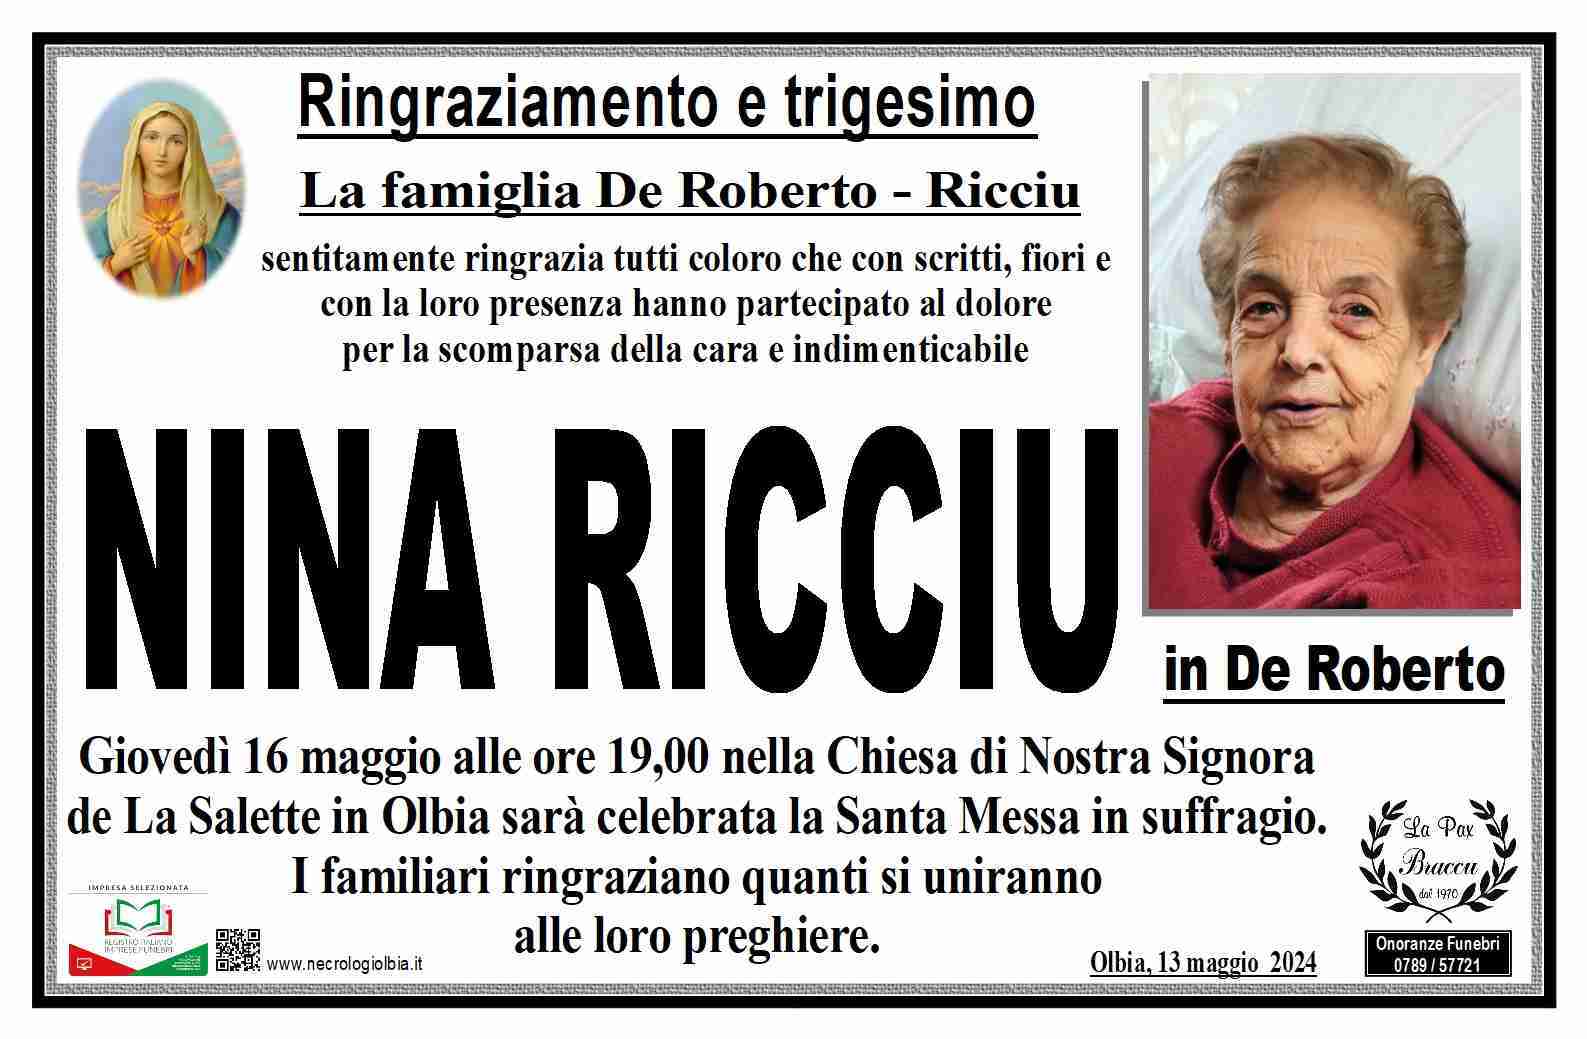 Nina Ricciu